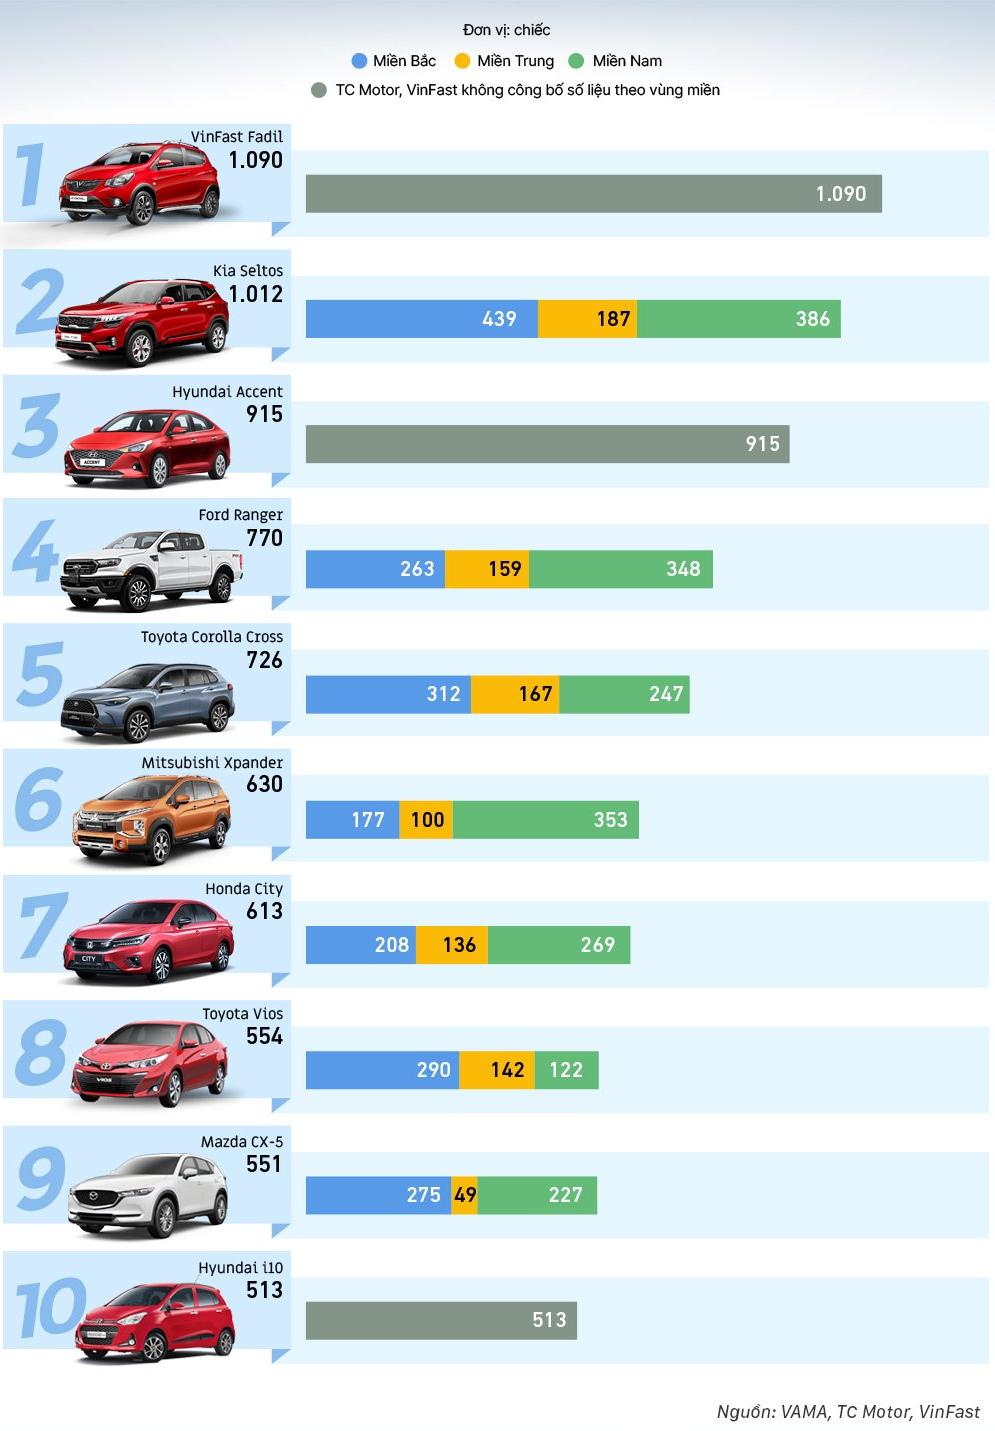 Top 10 ô tô bán chạy nhất tháng 2 năm 2021, Vinfast Fadil vượt mặt tất cả.